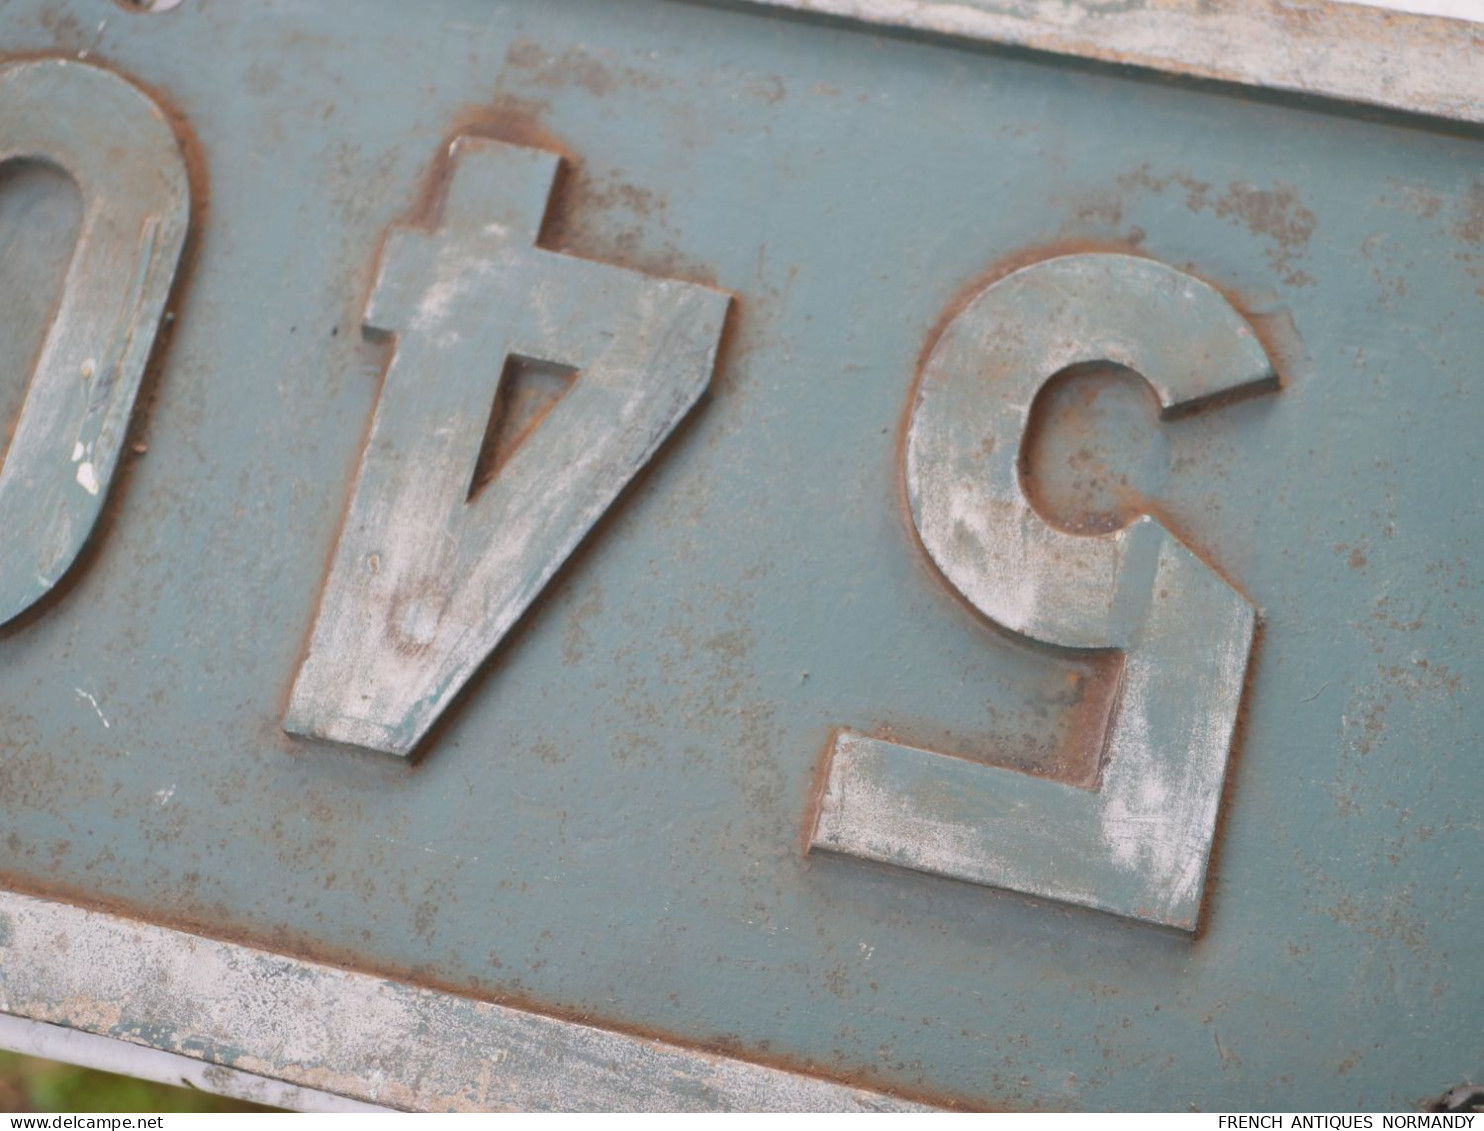 Antiquité ferroviaire - Plaque En Fonte D’aluminium 2D2-5405 Motrice SNCF - Vers 1940/50  Très rare plaque de motrice